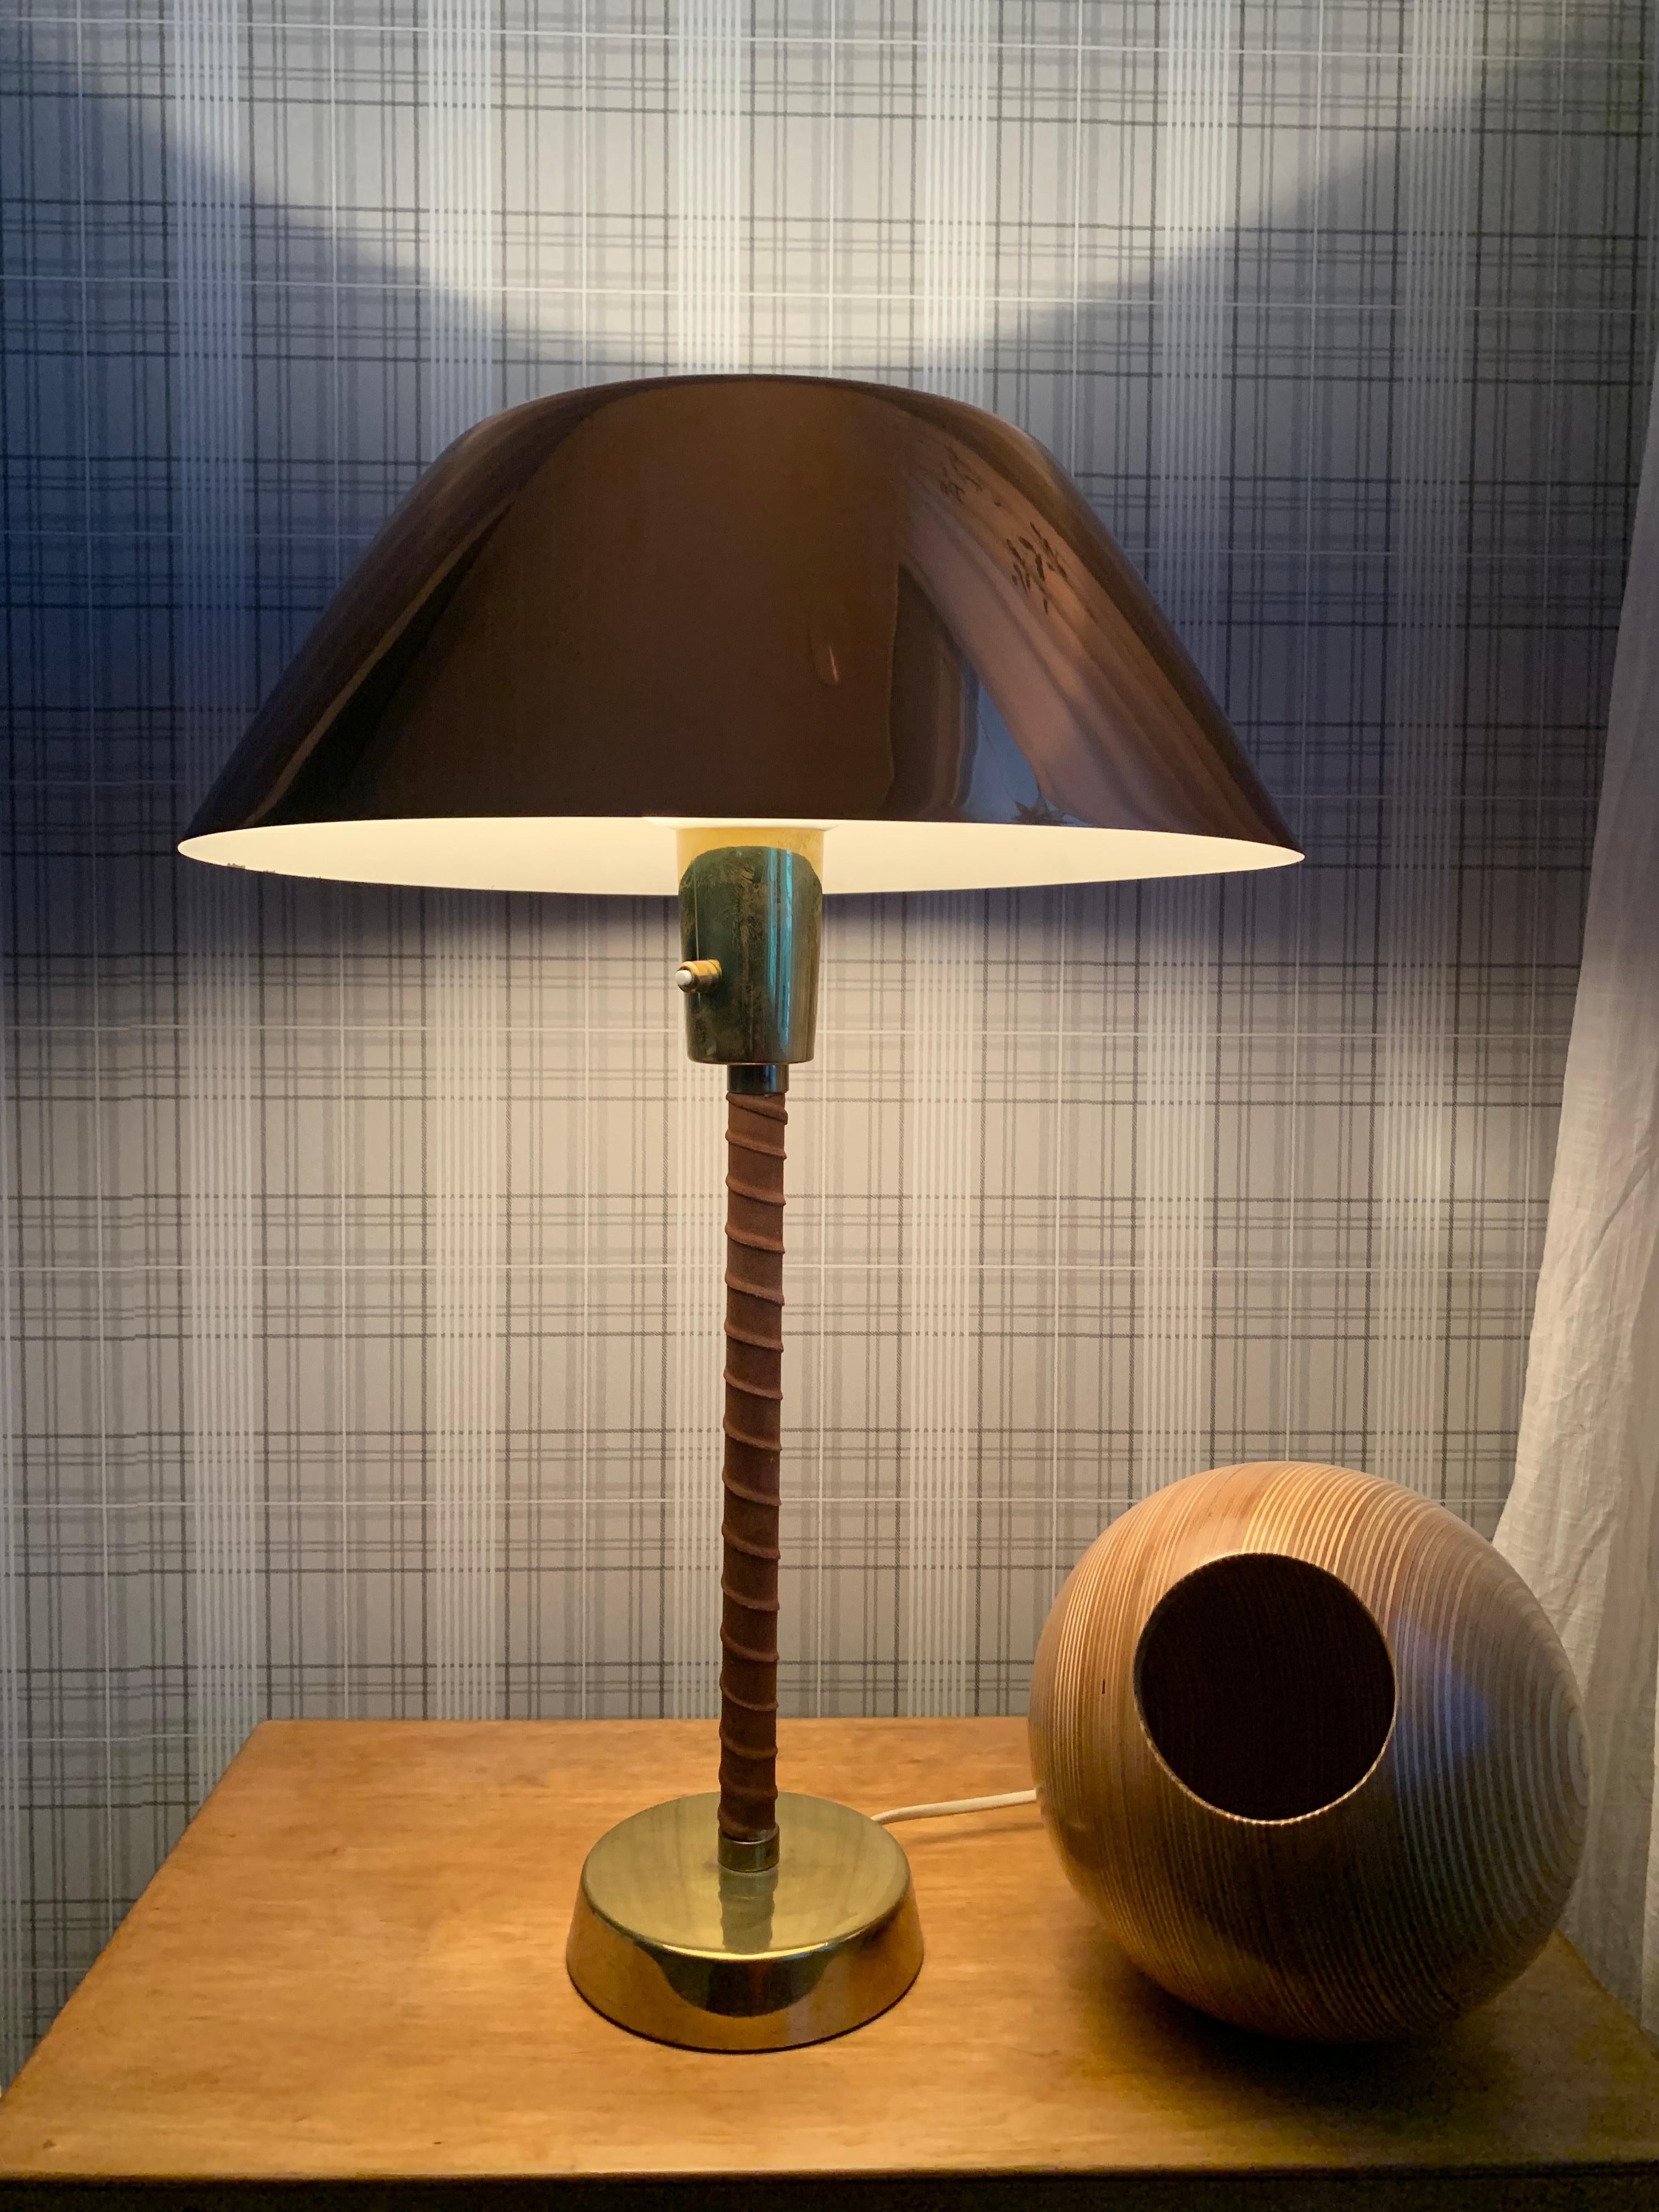 Tischleuchte, genannt Senator oder Modell 940025, entworfen von Lisa Johansson-Pape und hergestellt von Orno in Finnland, um 1948. Hergestellt aus Kupfer, Messing und Leder.
Hinweis: Die Leuchte muss entsprechend den örtlichen Anforderungen